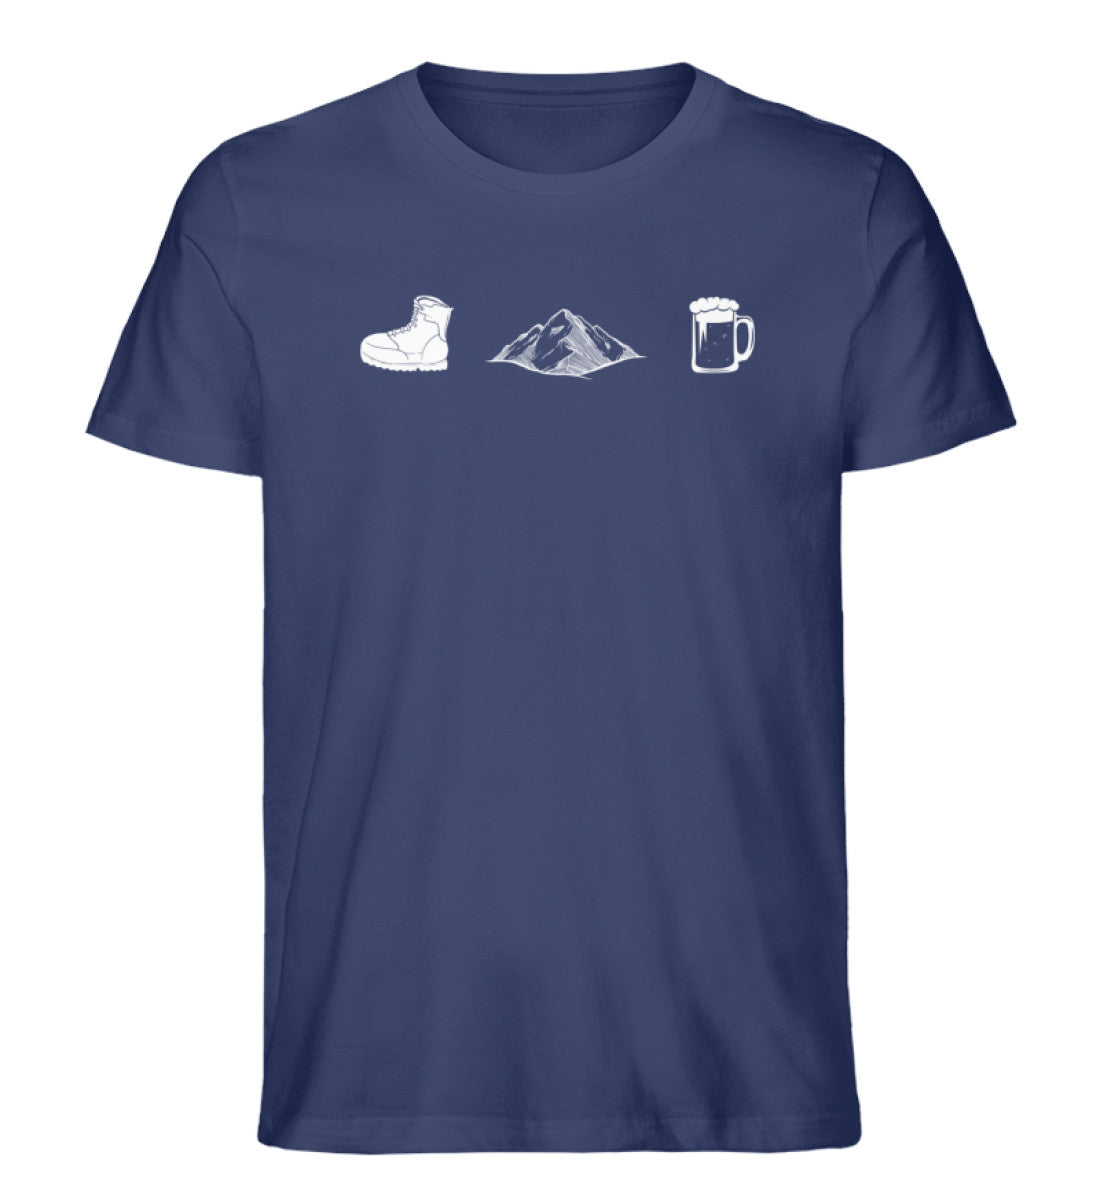 Wandern, Berge, Bier - Herren Organic T-Shirt berge wandern Navyblau